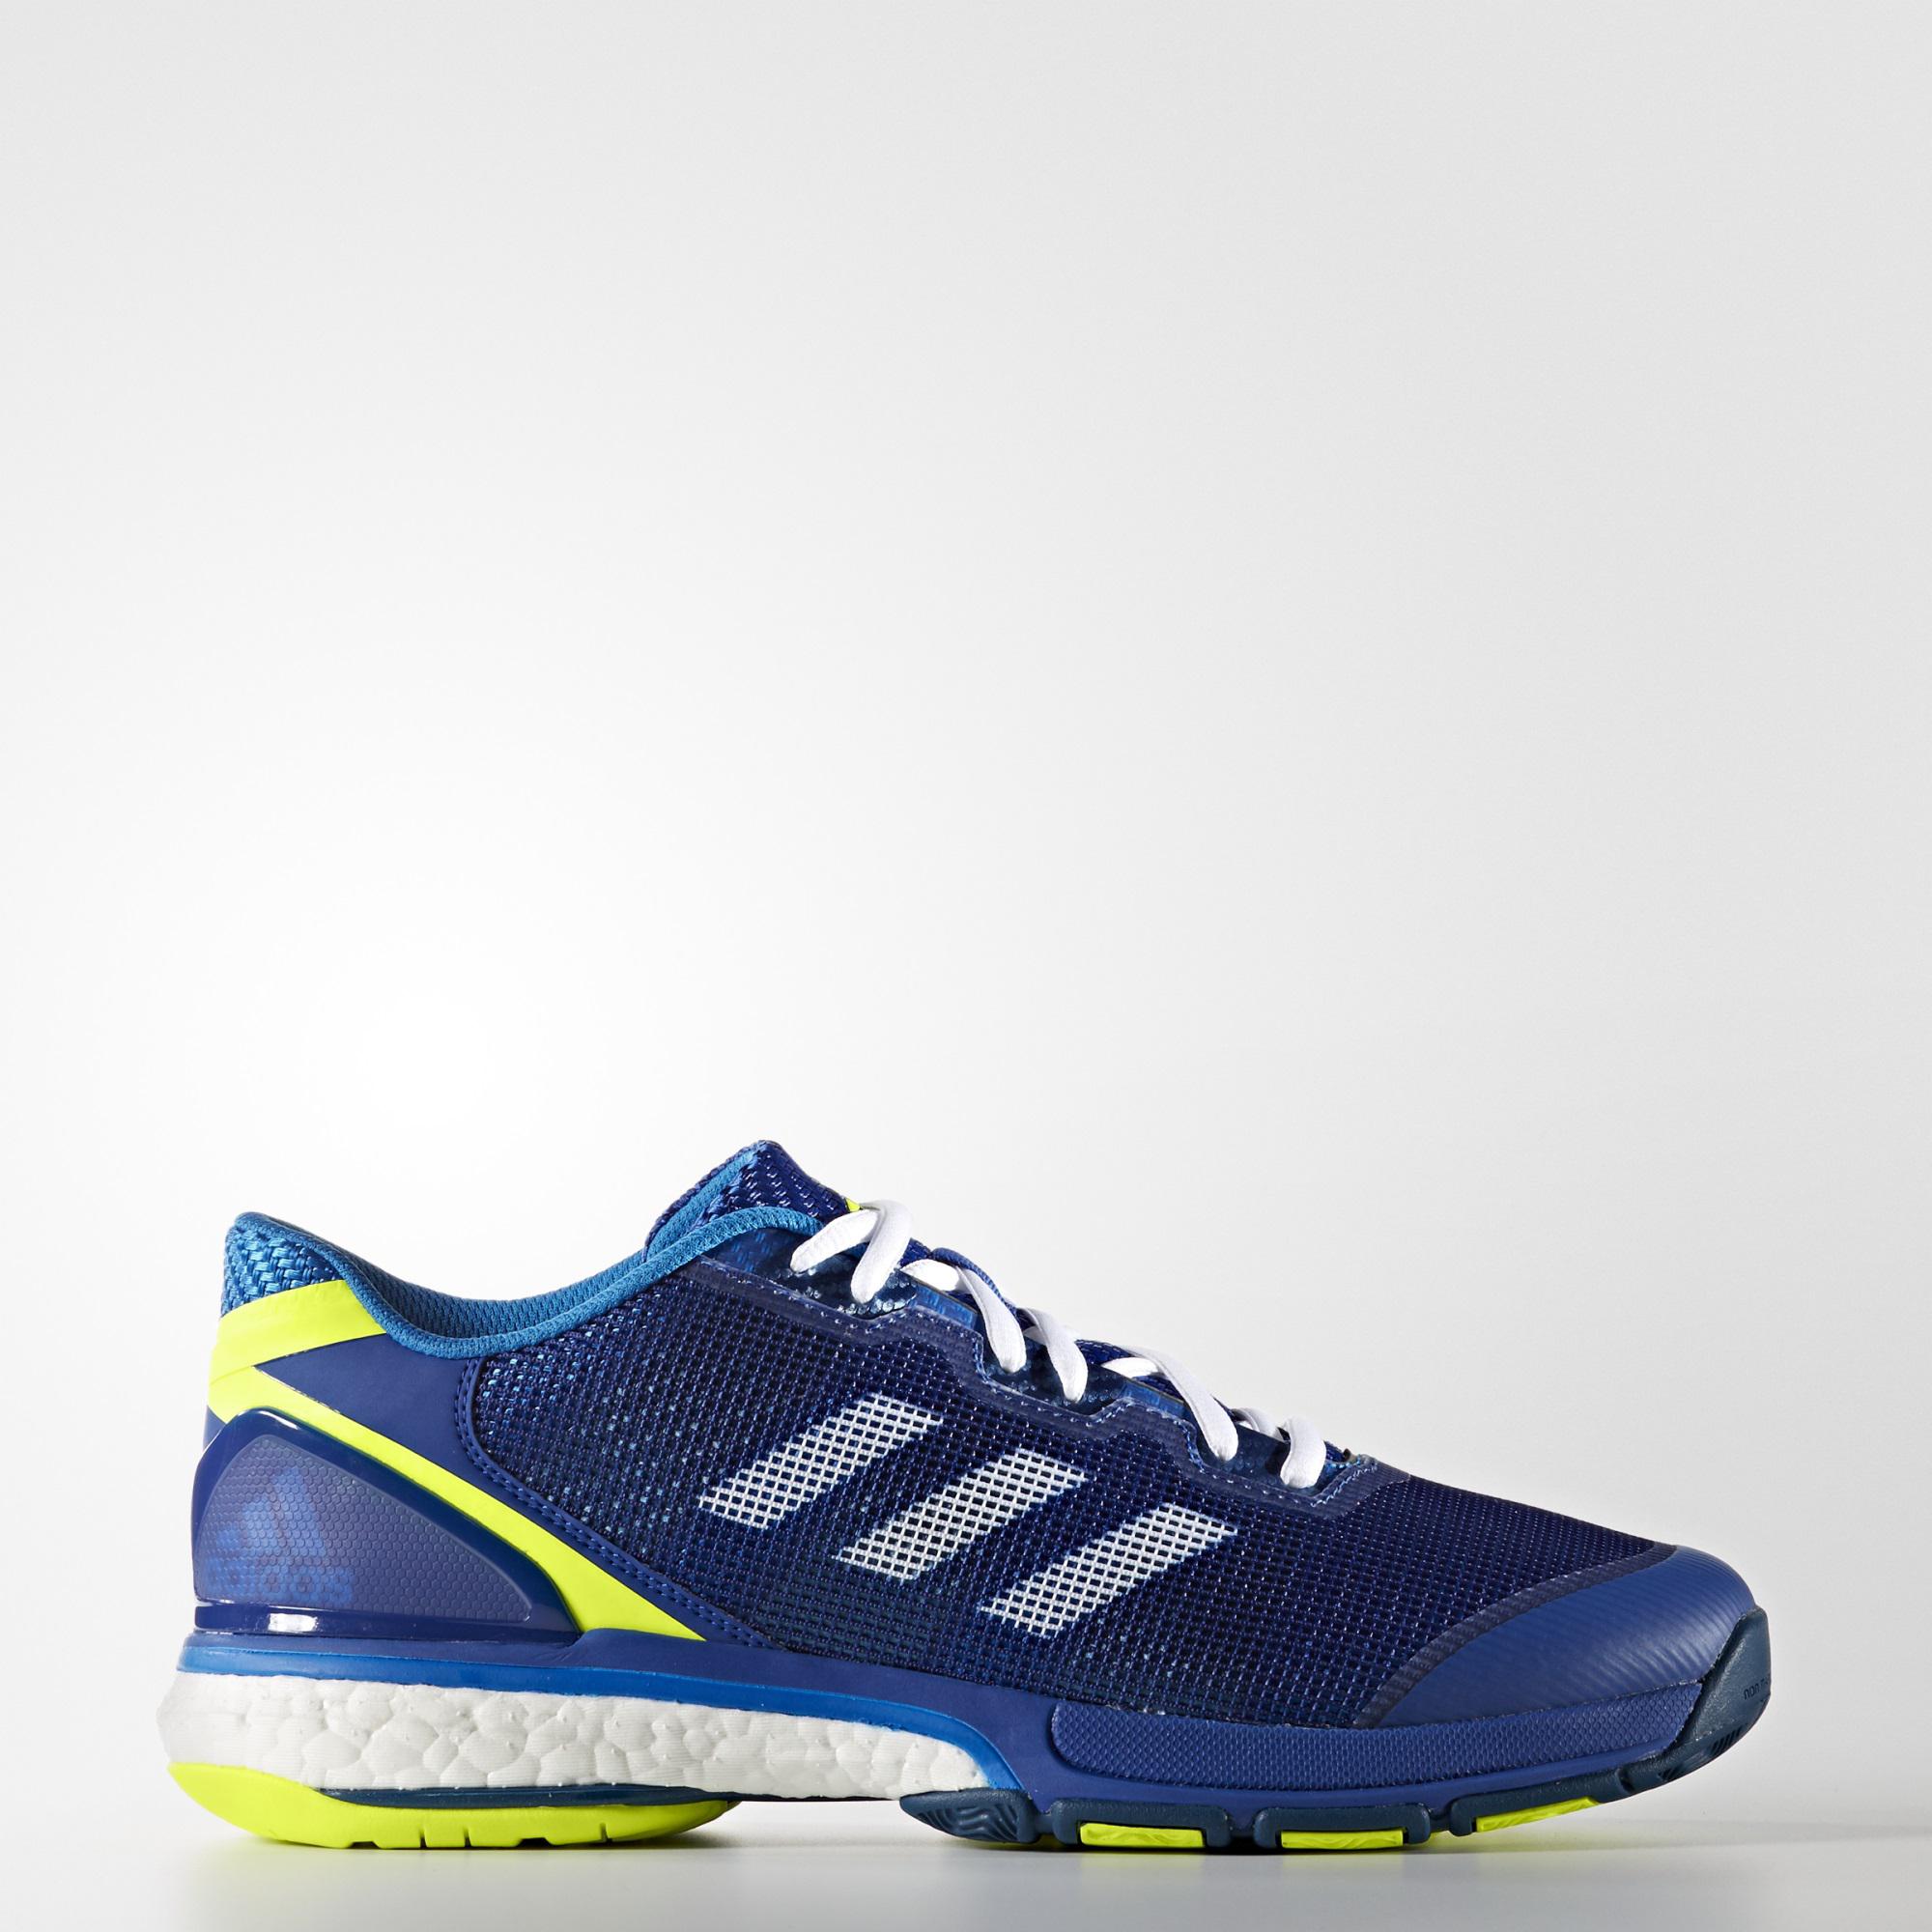 Encyclopedia Fremskynde udeladt Adidas Mens Stabil Boost 2 Indoor Shoes - Blue - Tennisnuts.com